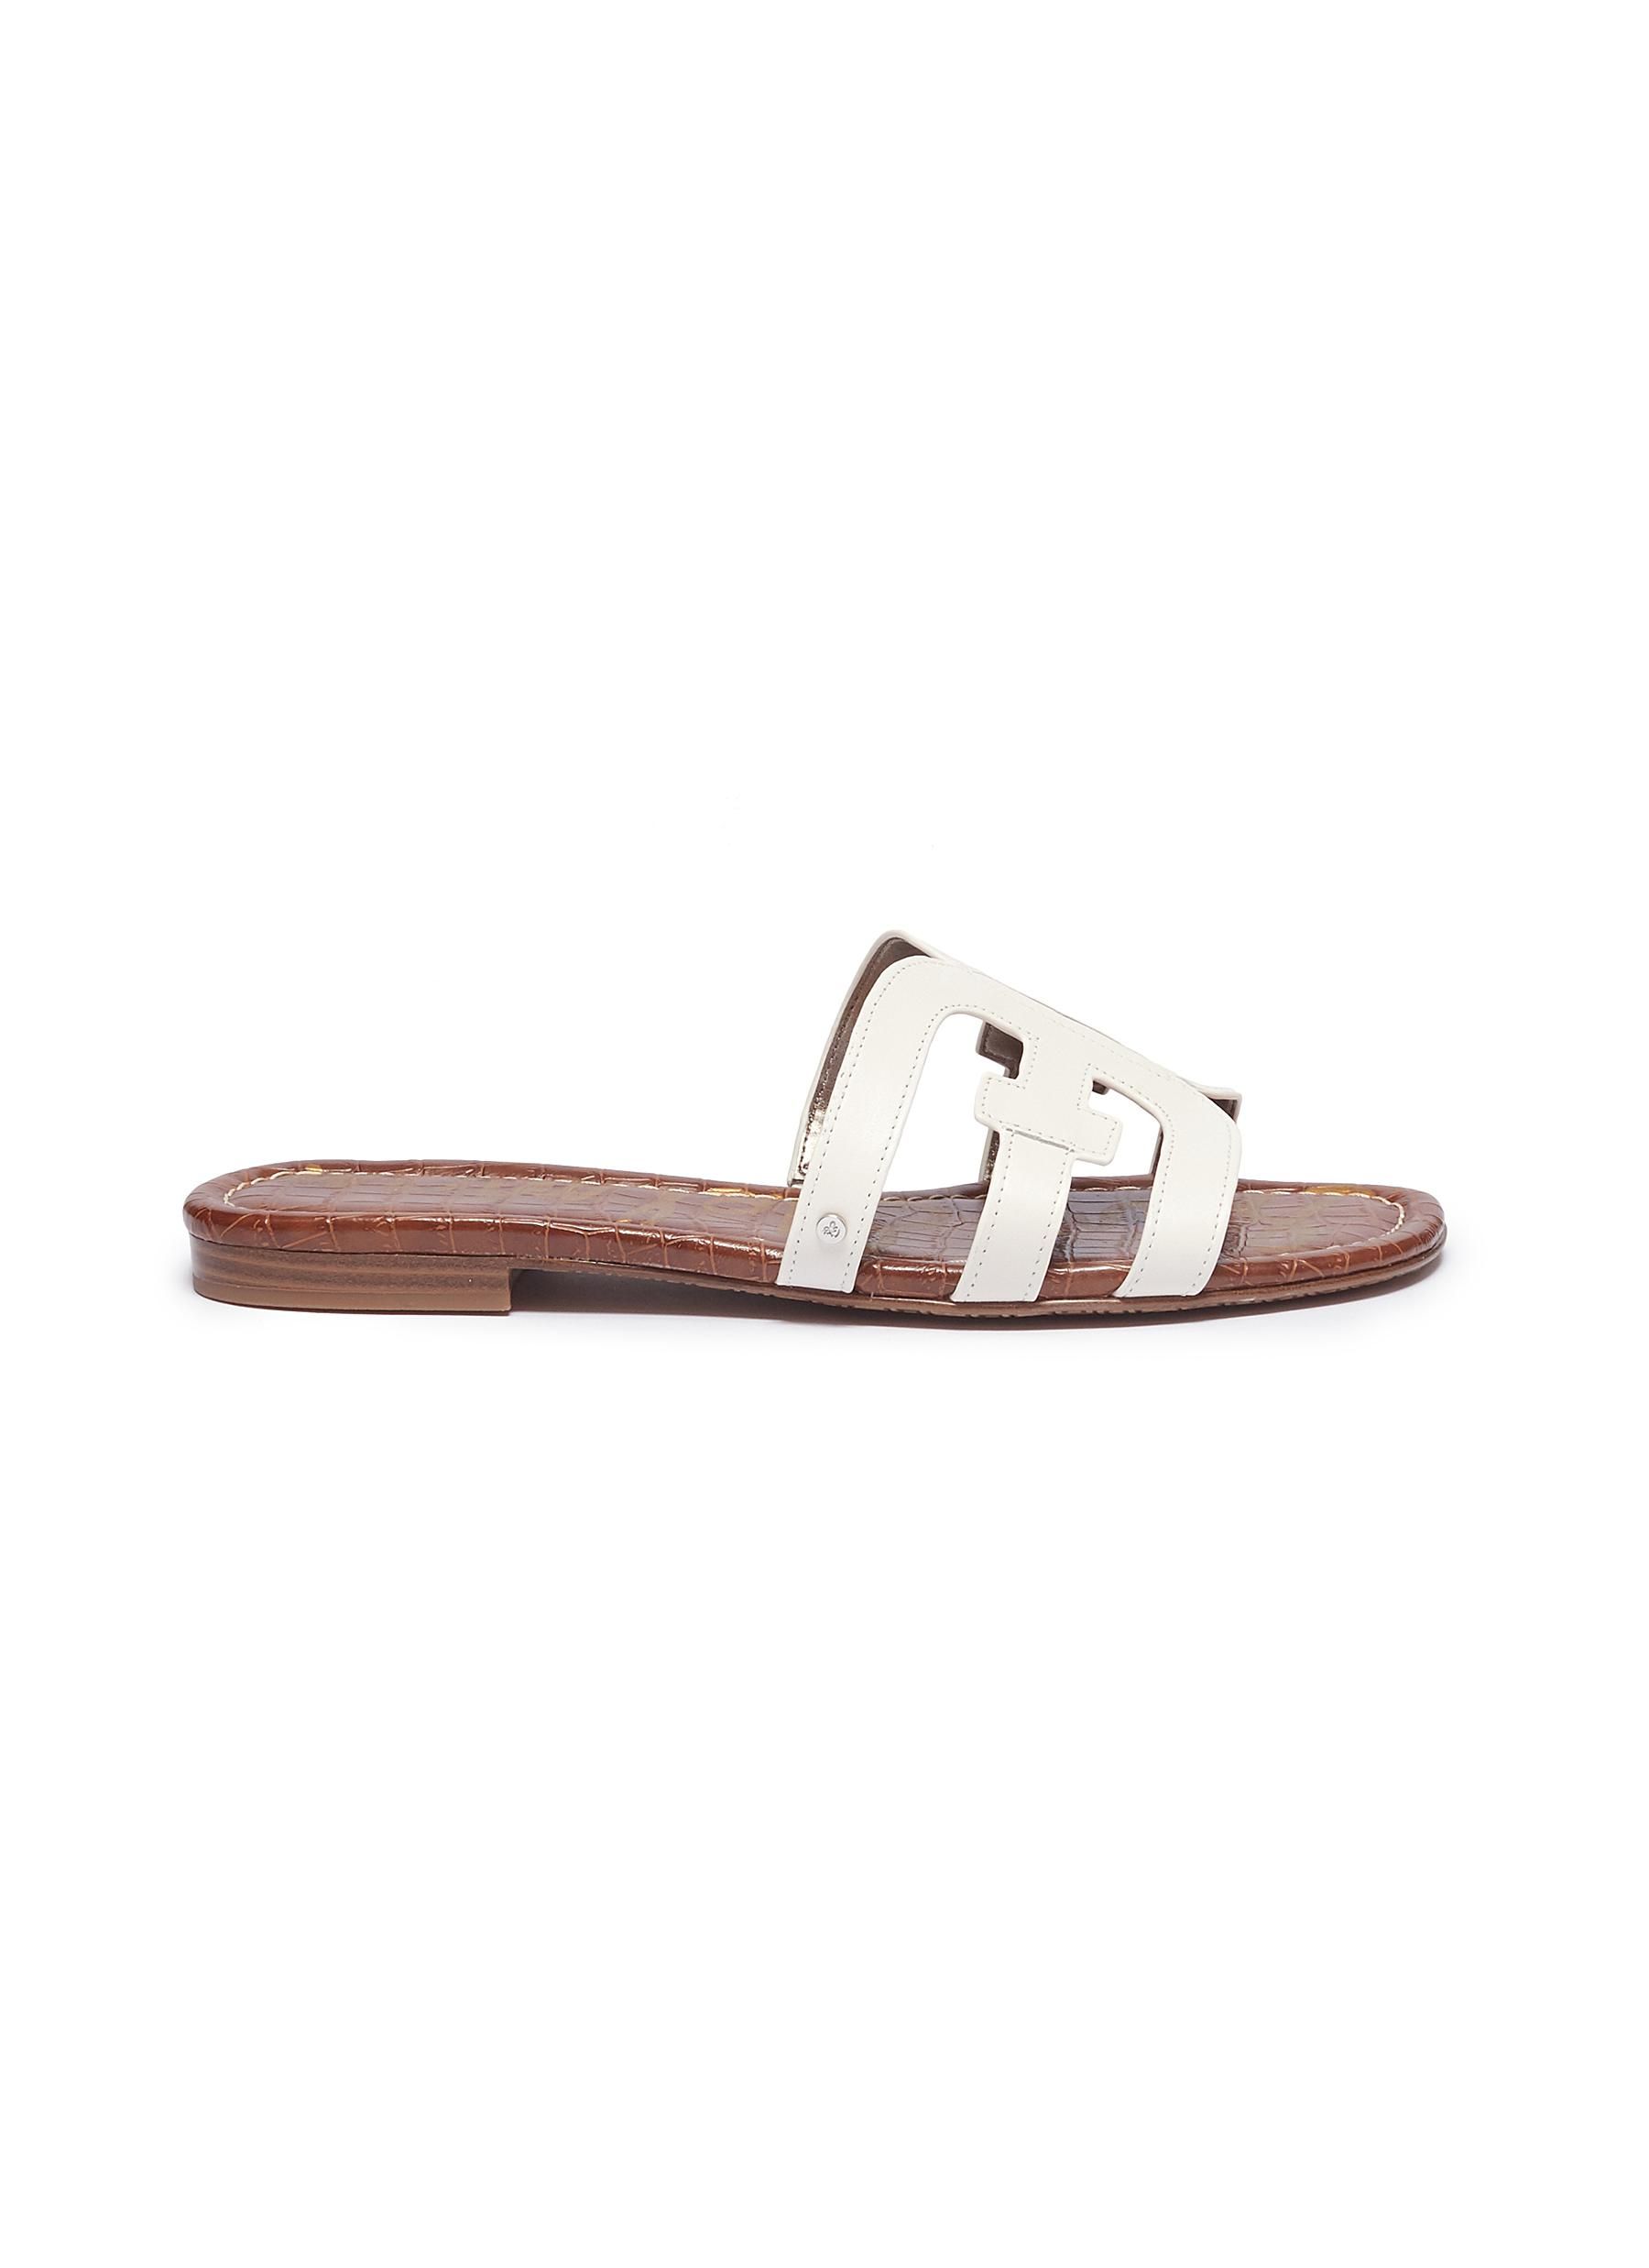 'Bay' leather slide sandals | Lane Crawford (US)